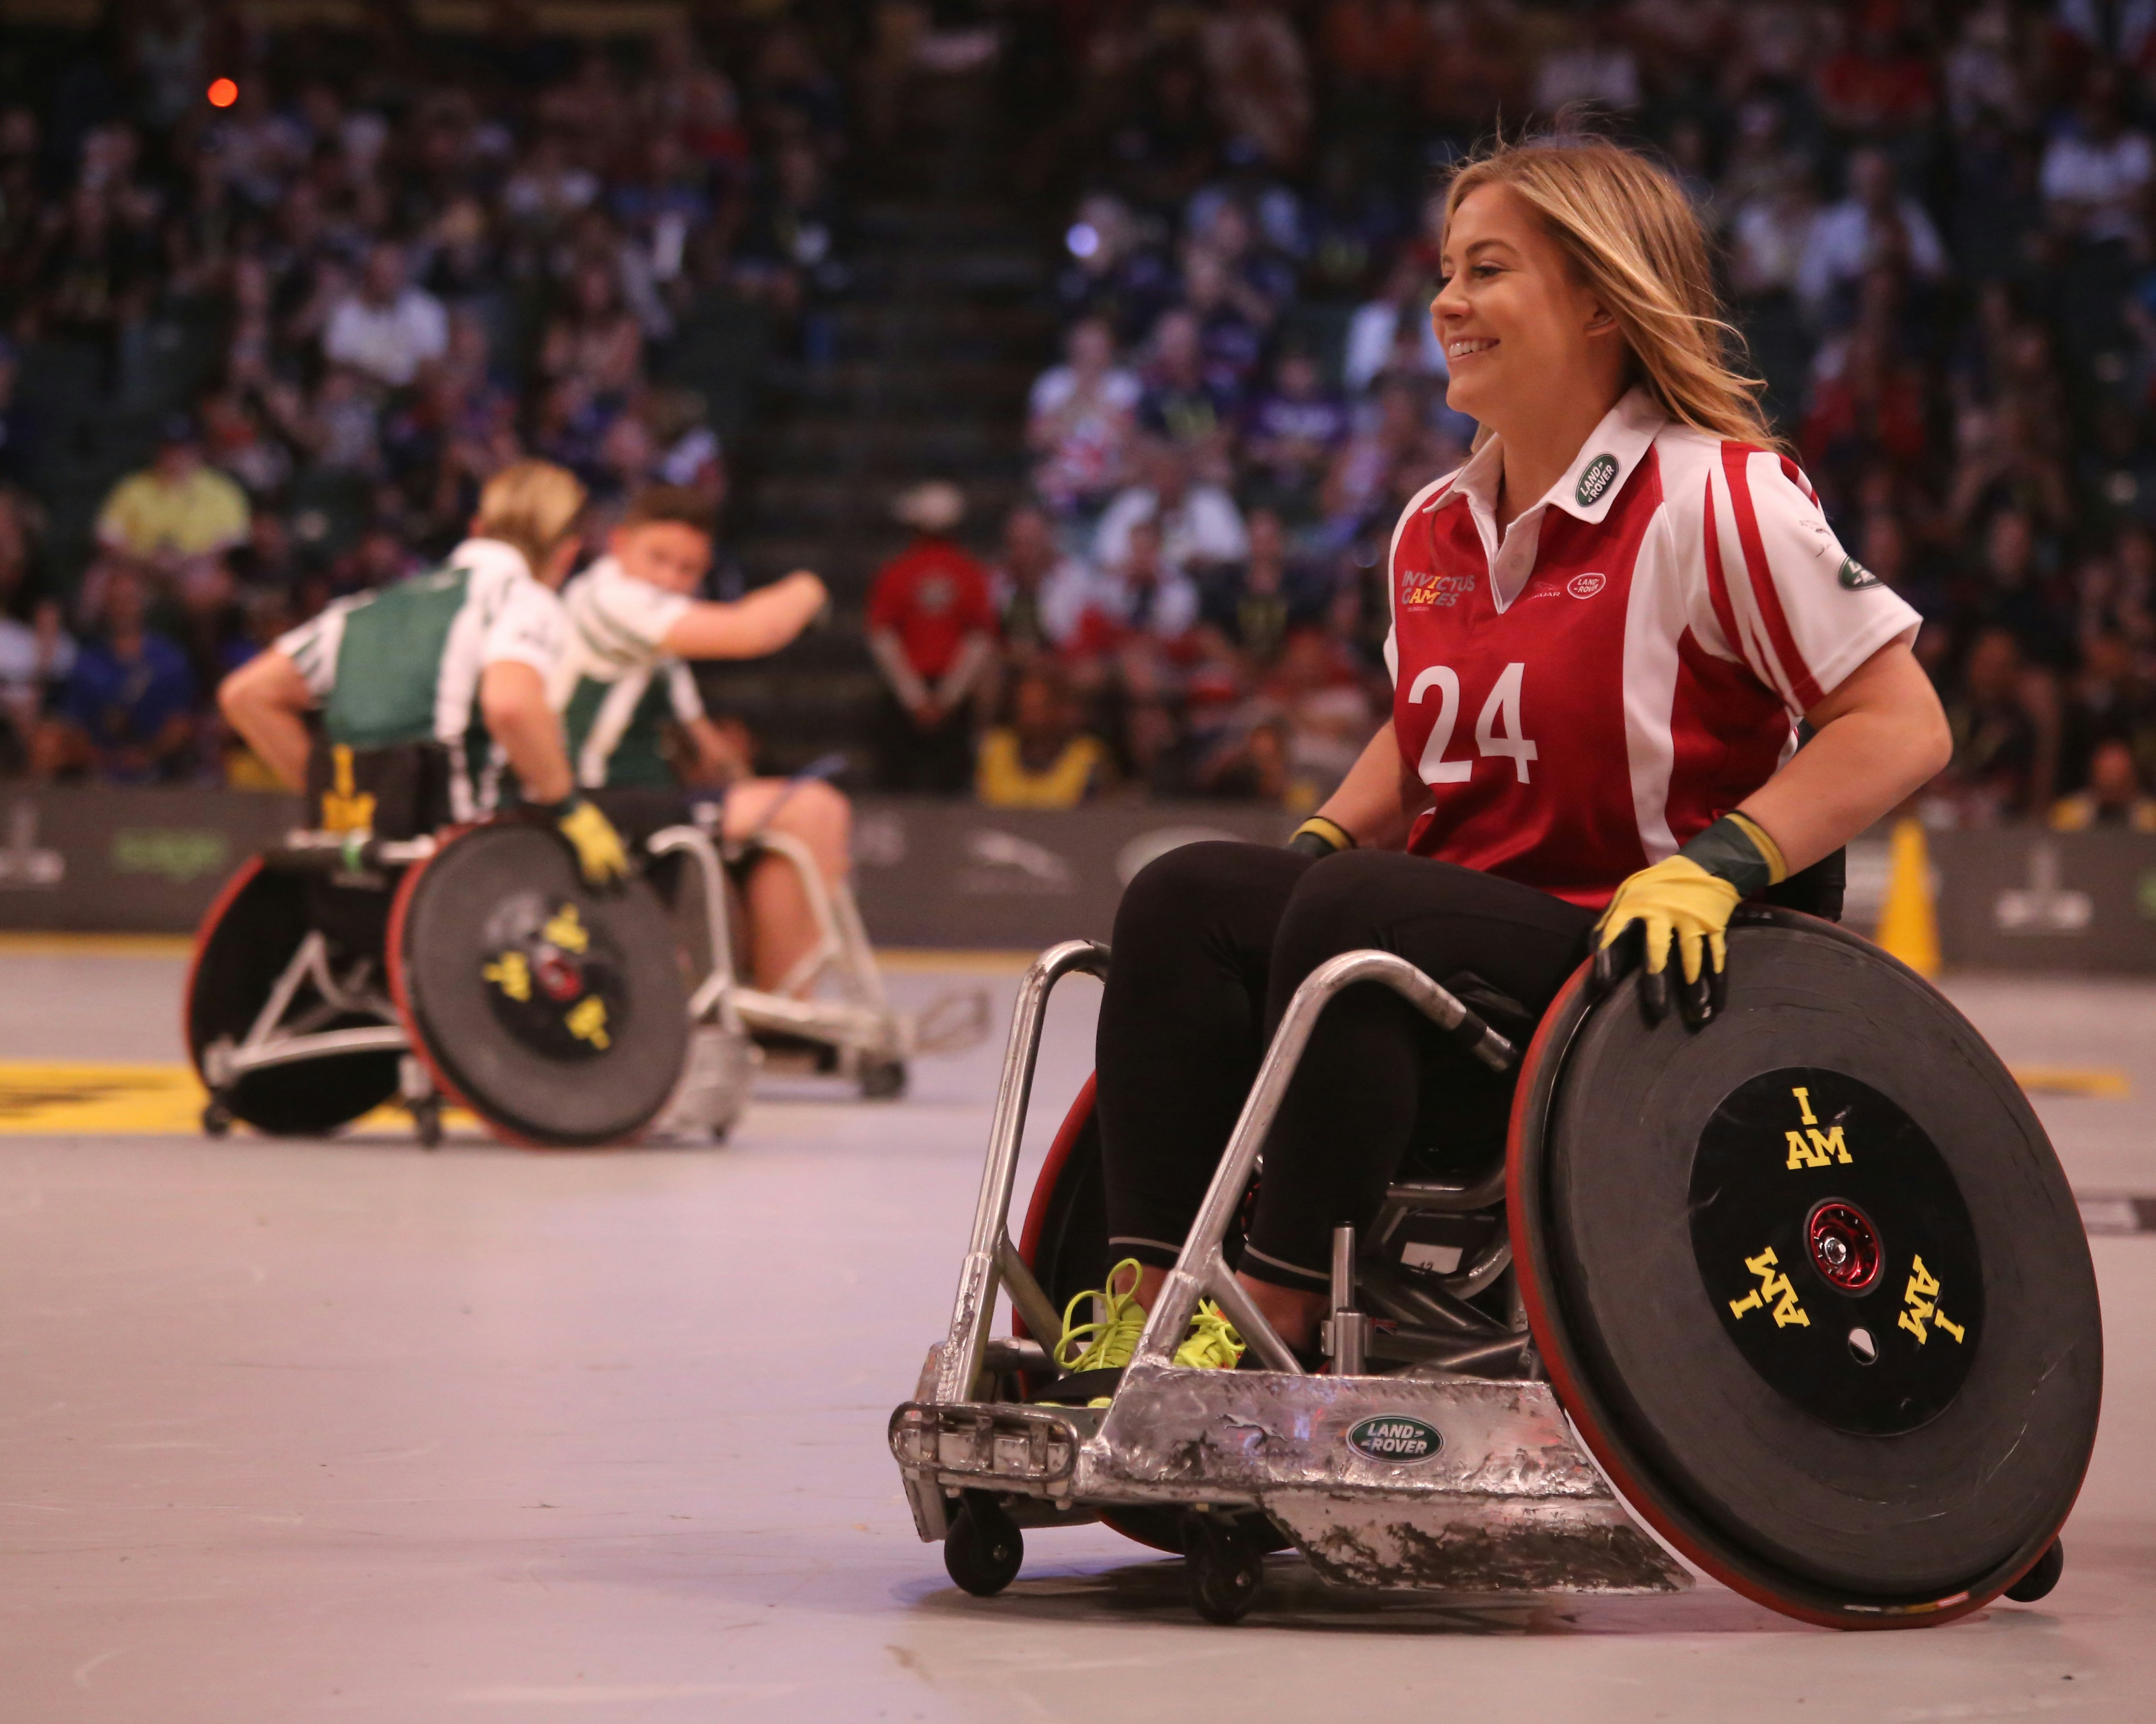 Kvinna i rullstol som är i en idrottshall